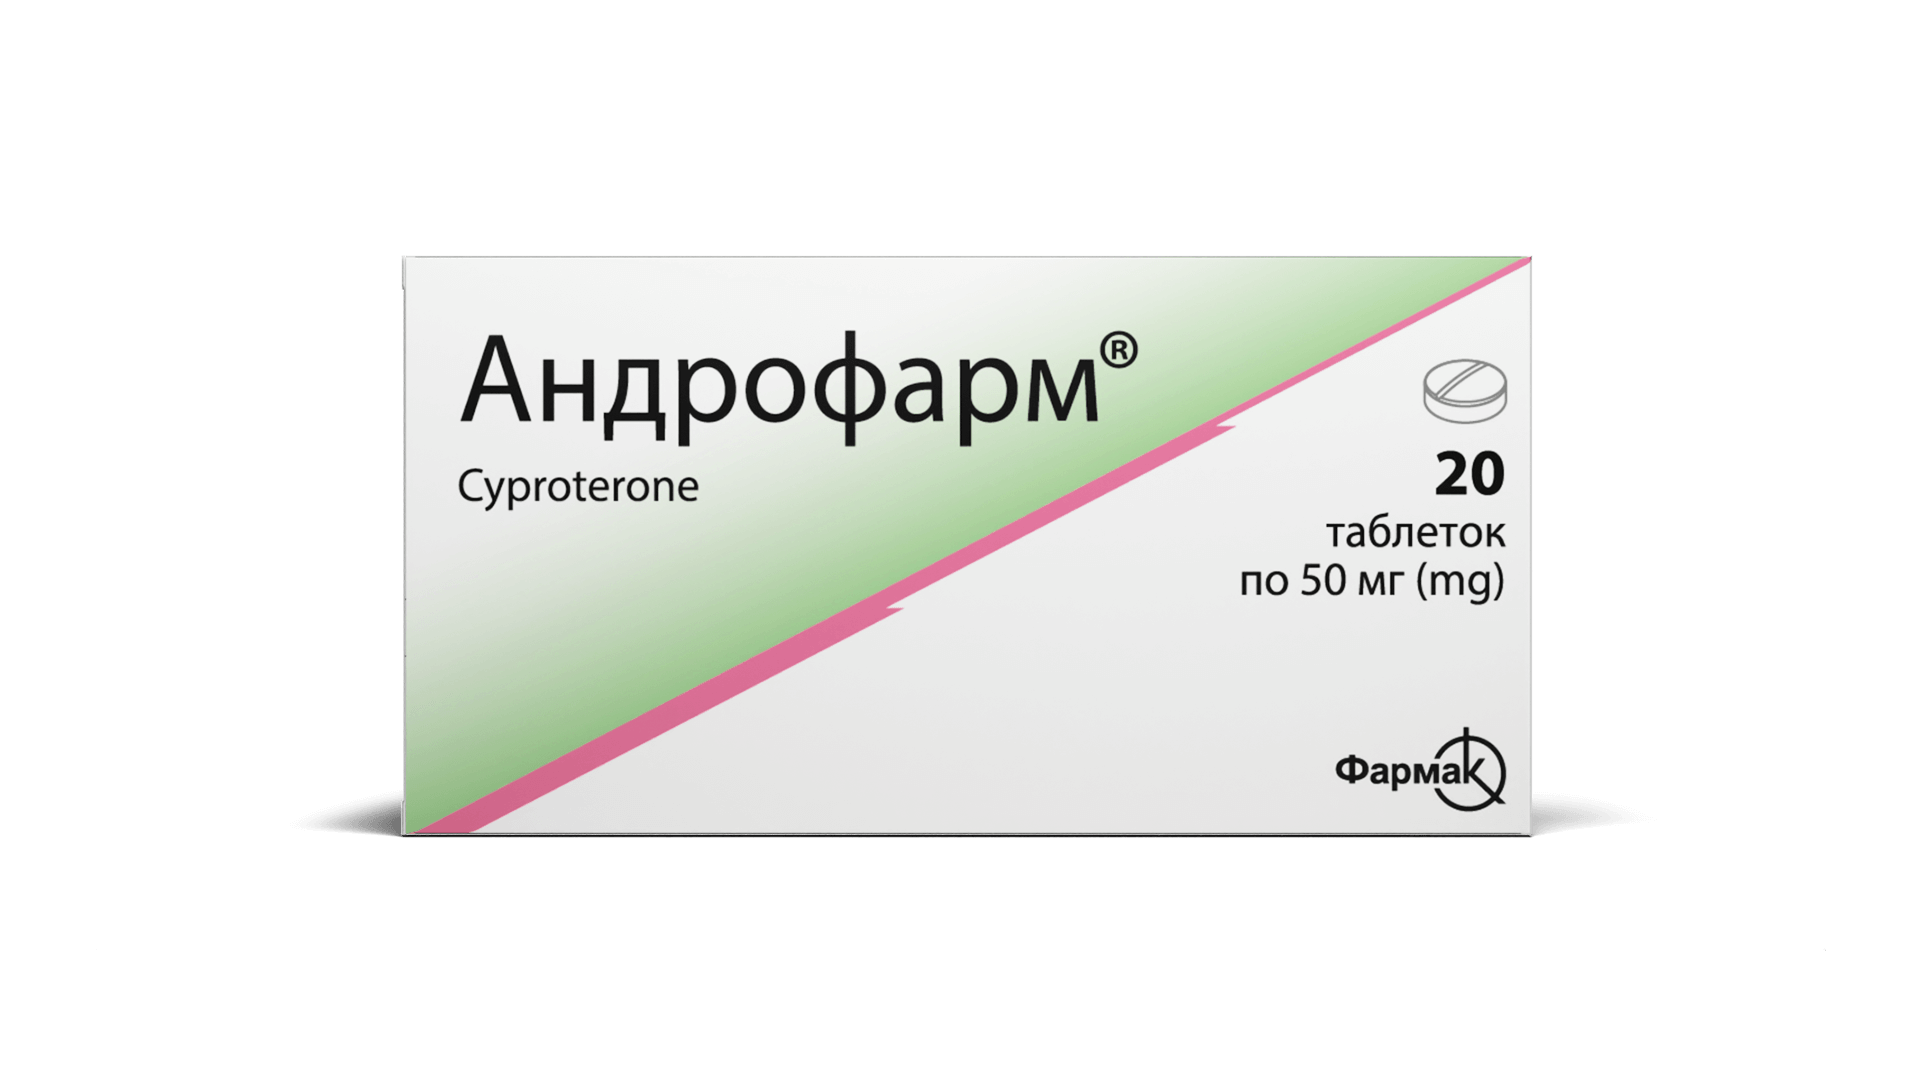 Андрофарм® (таблетки) (2)